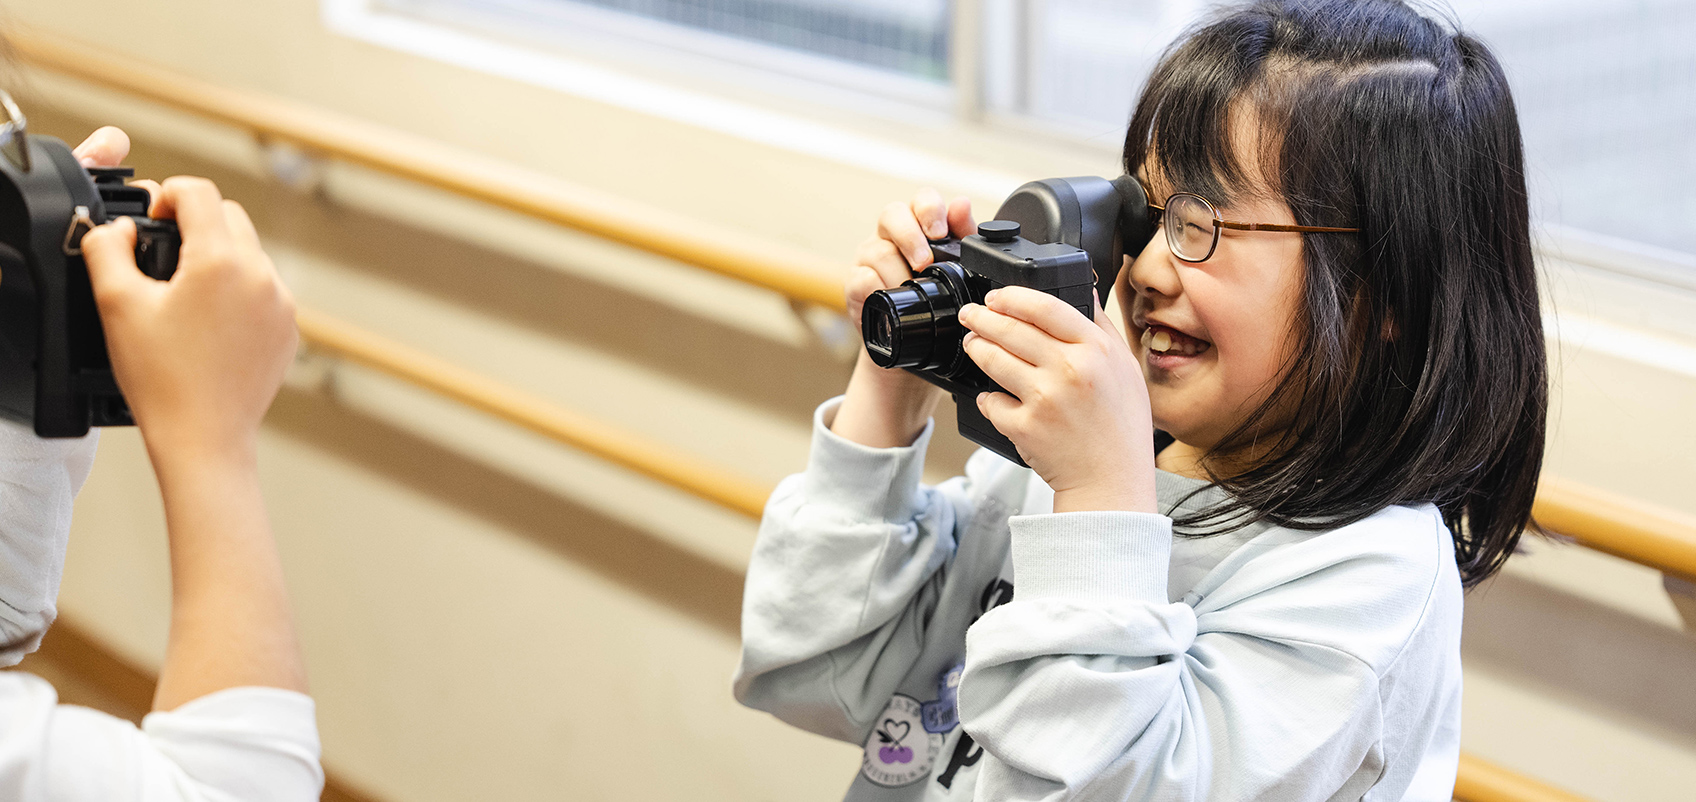 子供同士で寄贈された網膜投影カメラキット『DSC-HX99 RNV kit』で撮影を楽しんでいる。